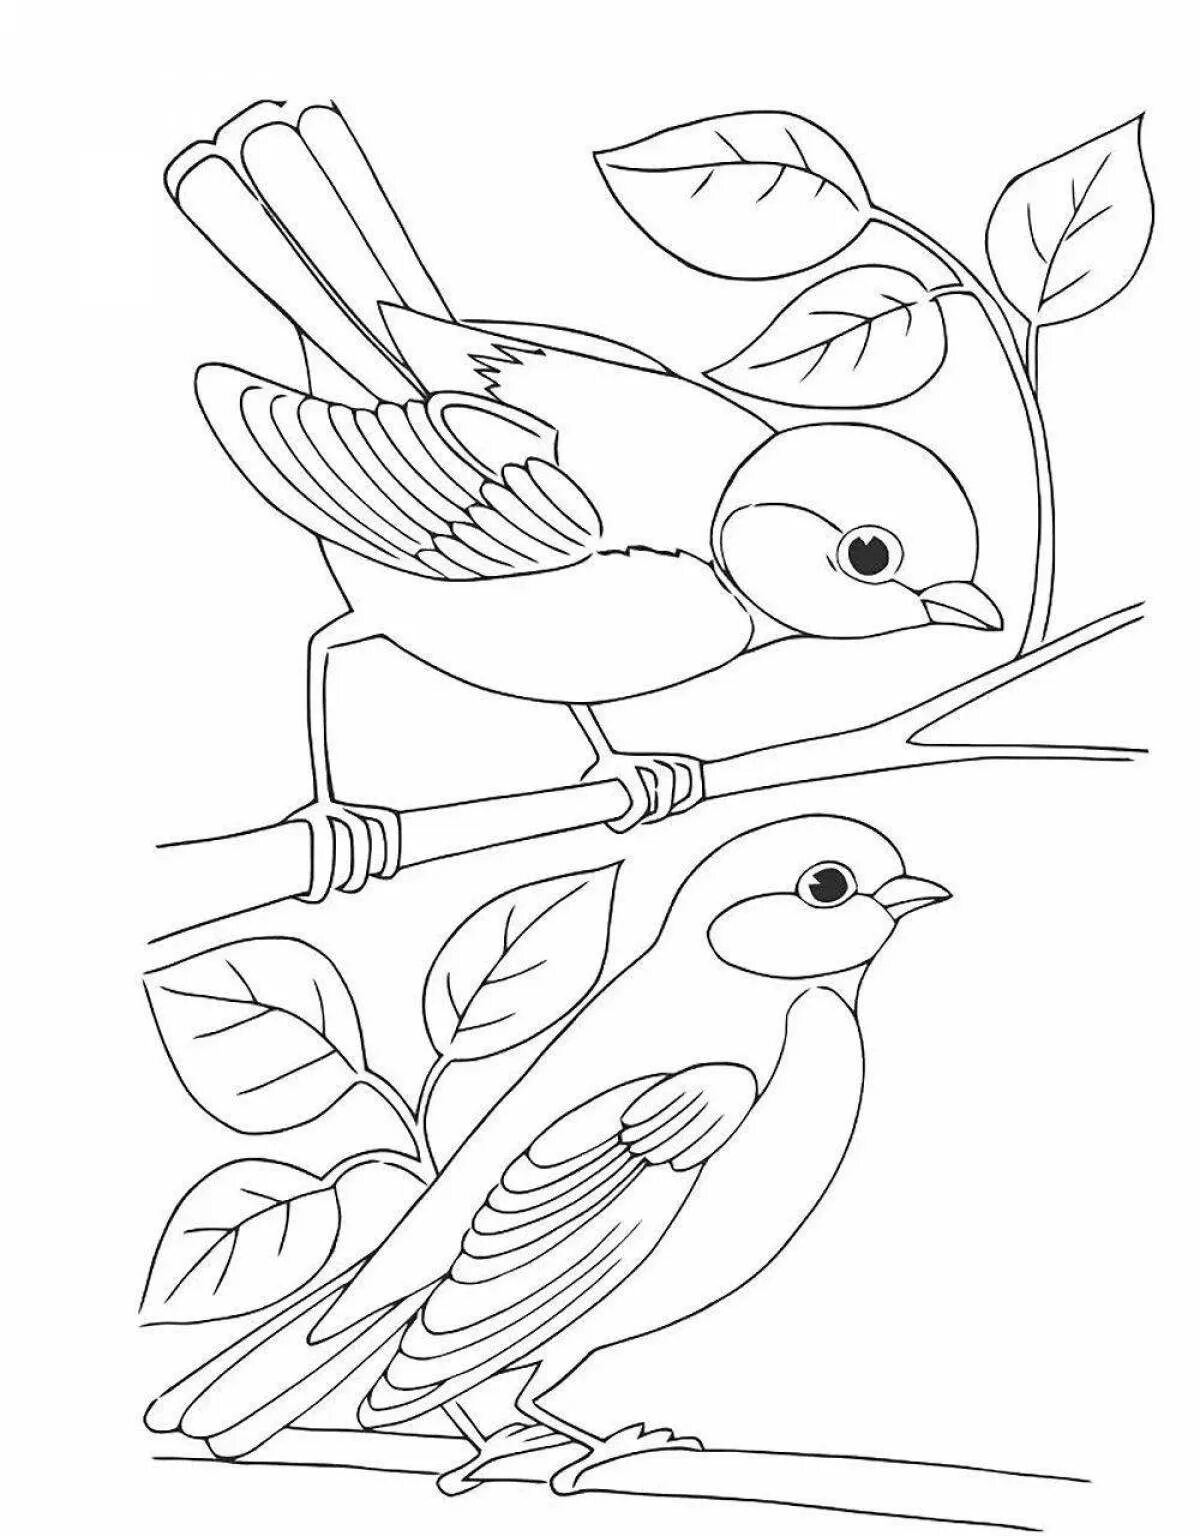 Распечатать картинку птицы для детей. Птицы. Раскраска. Птичка раскраска. Птицы раскраска для детей. Синичка раскраска.